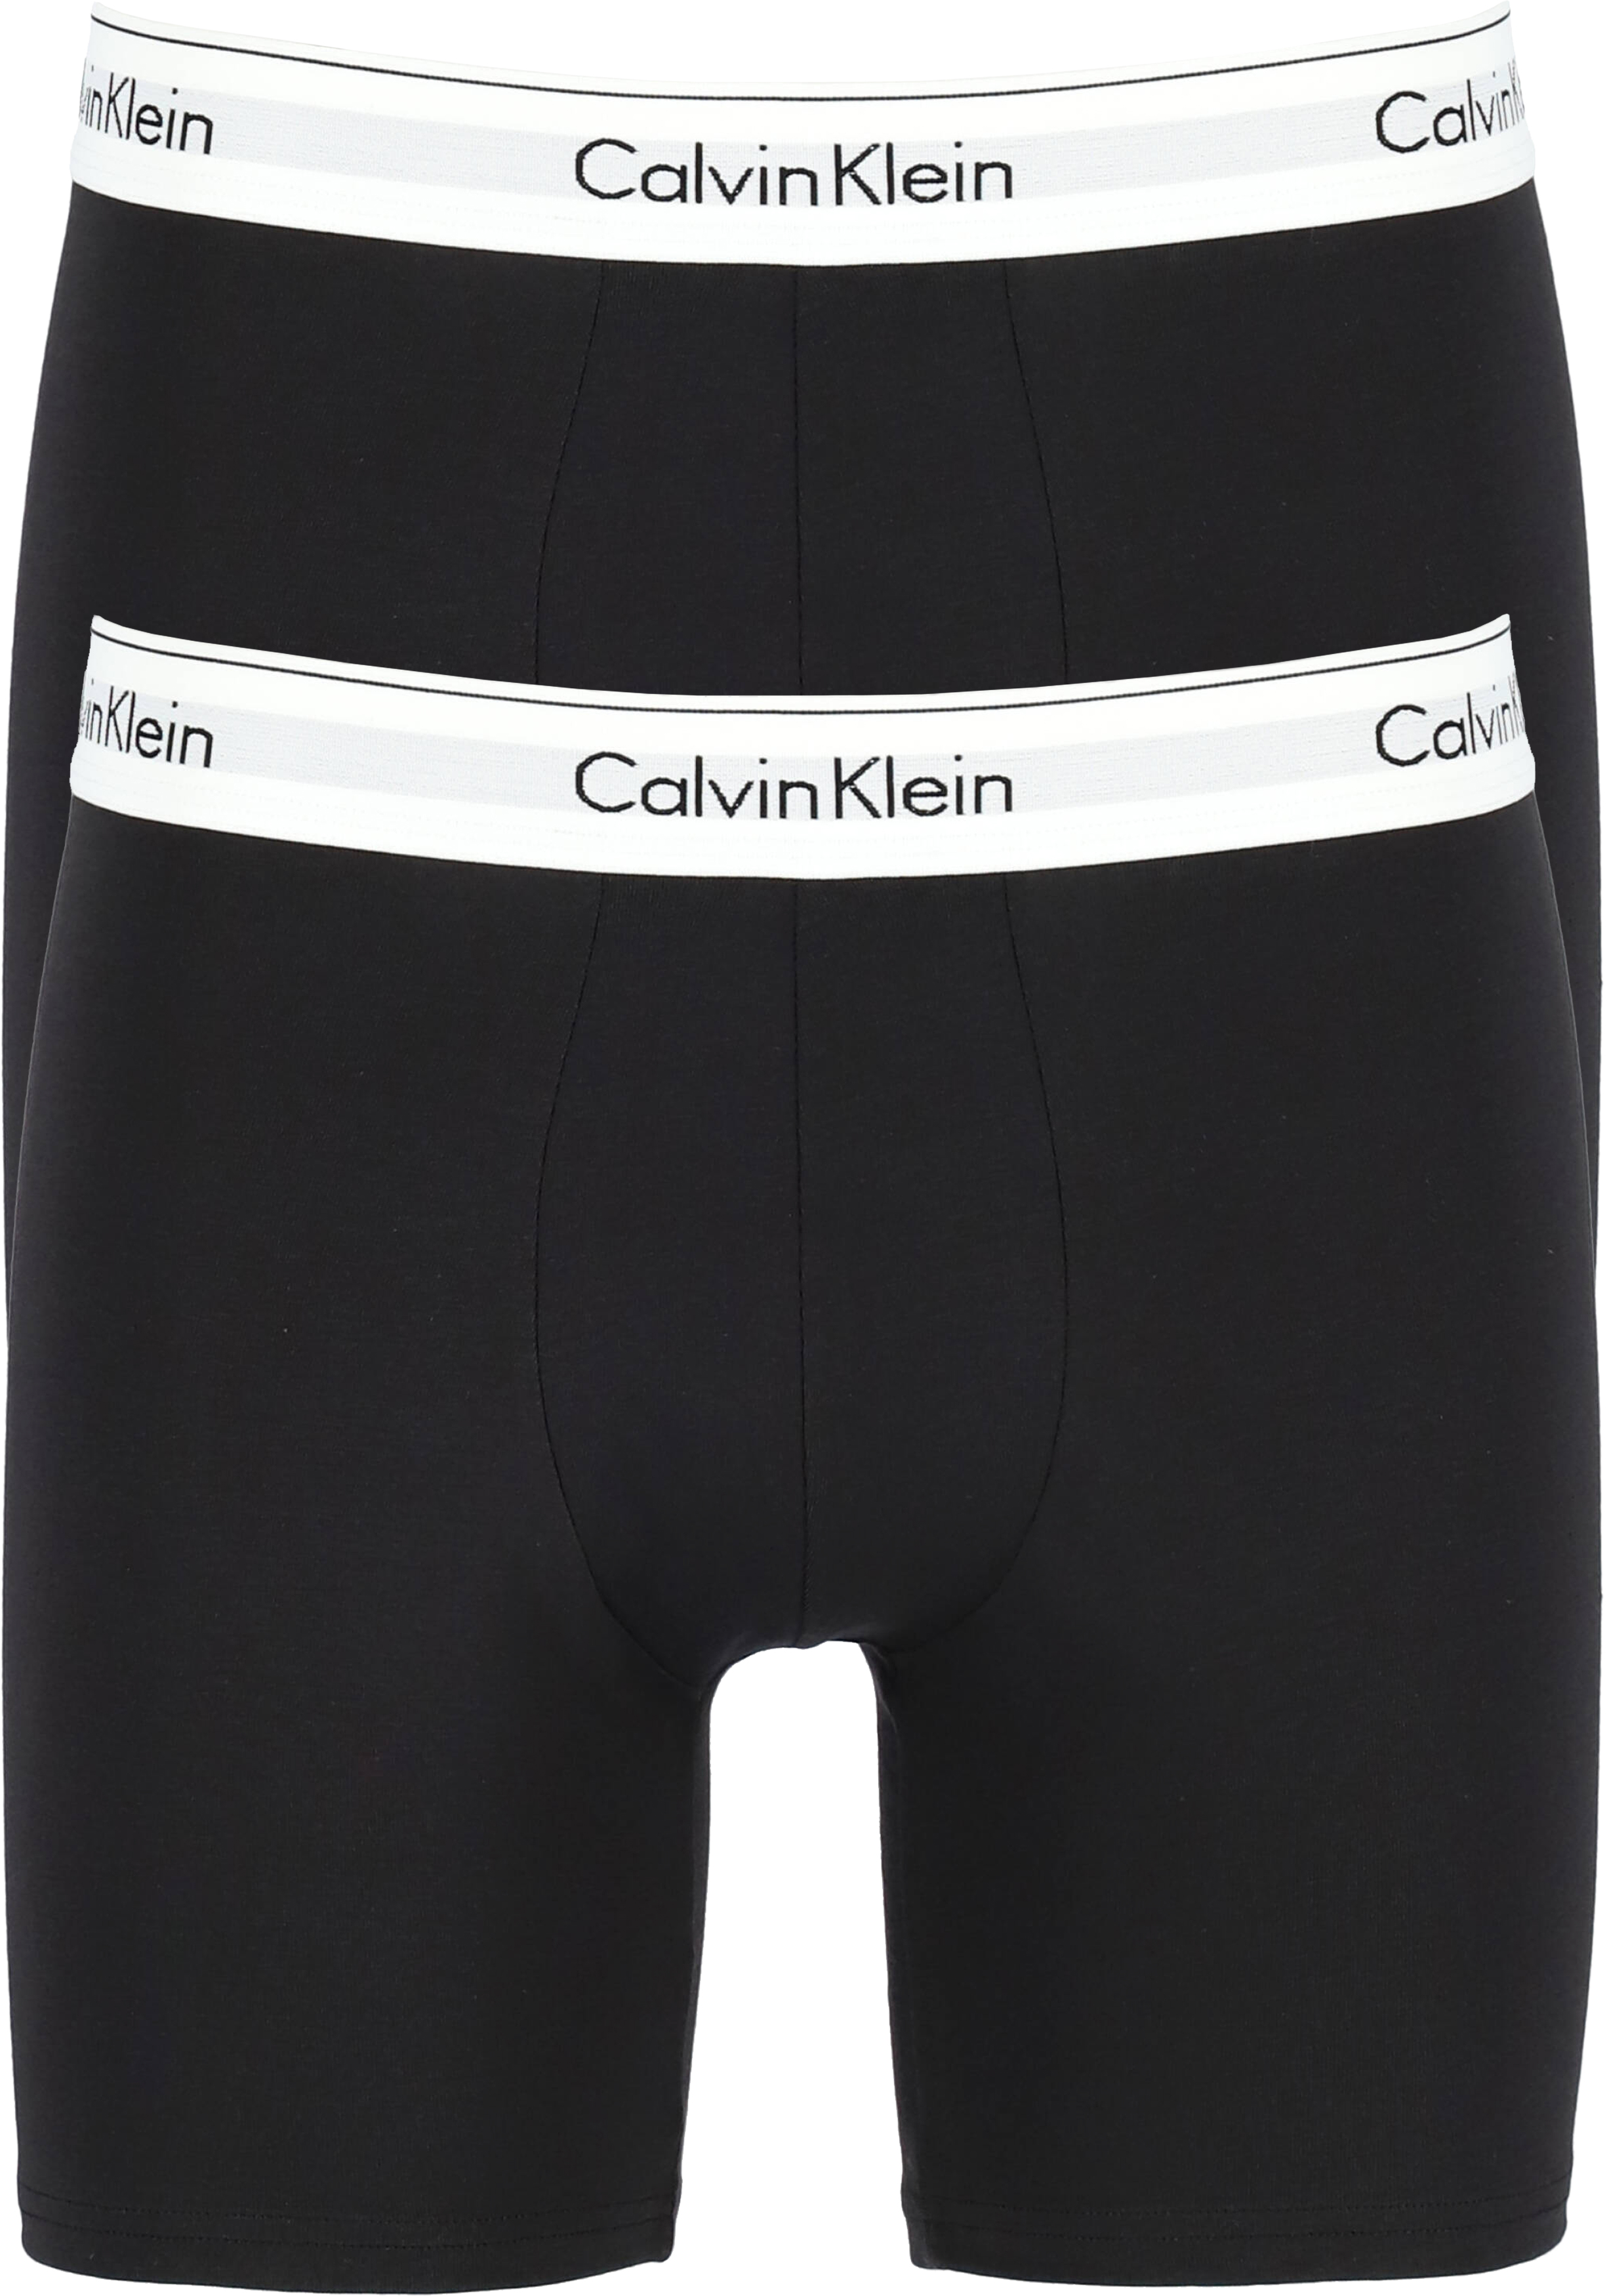 Overjas beroemd beoefenaar Calvin Klein Modern Cotton boxer brief (2-pack), heren boxers lang, zwart -  Zomer SALE tot 50% korting